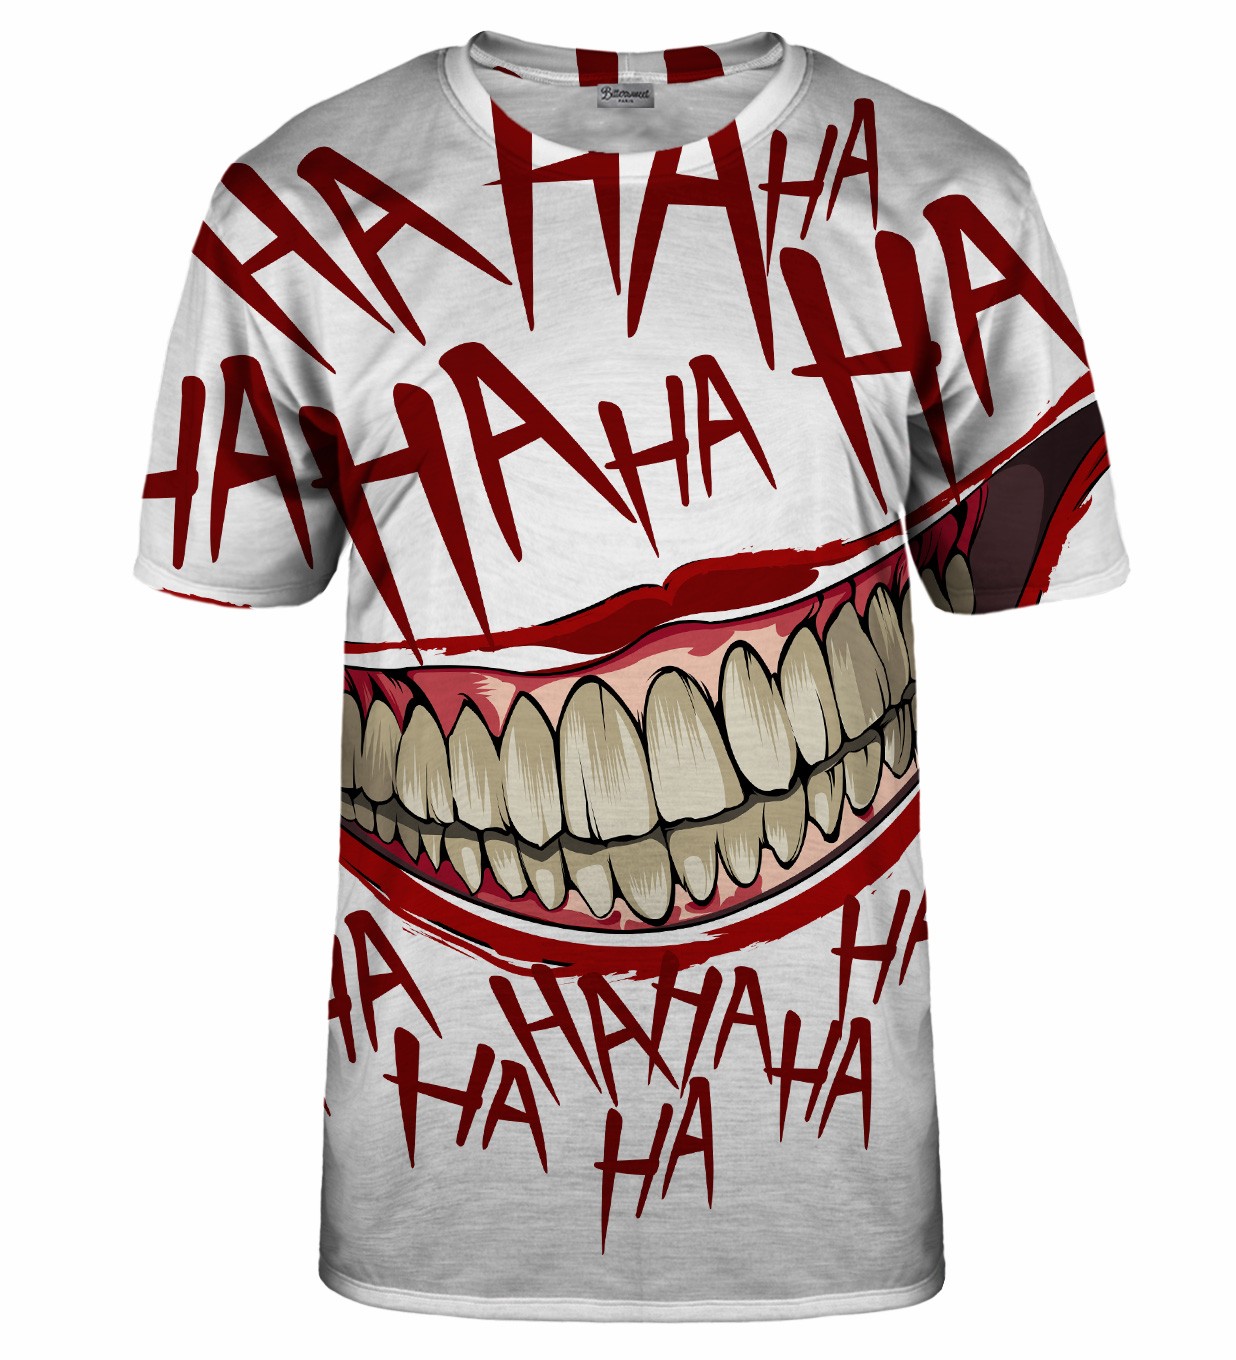 Hahaha T-Shirt - M